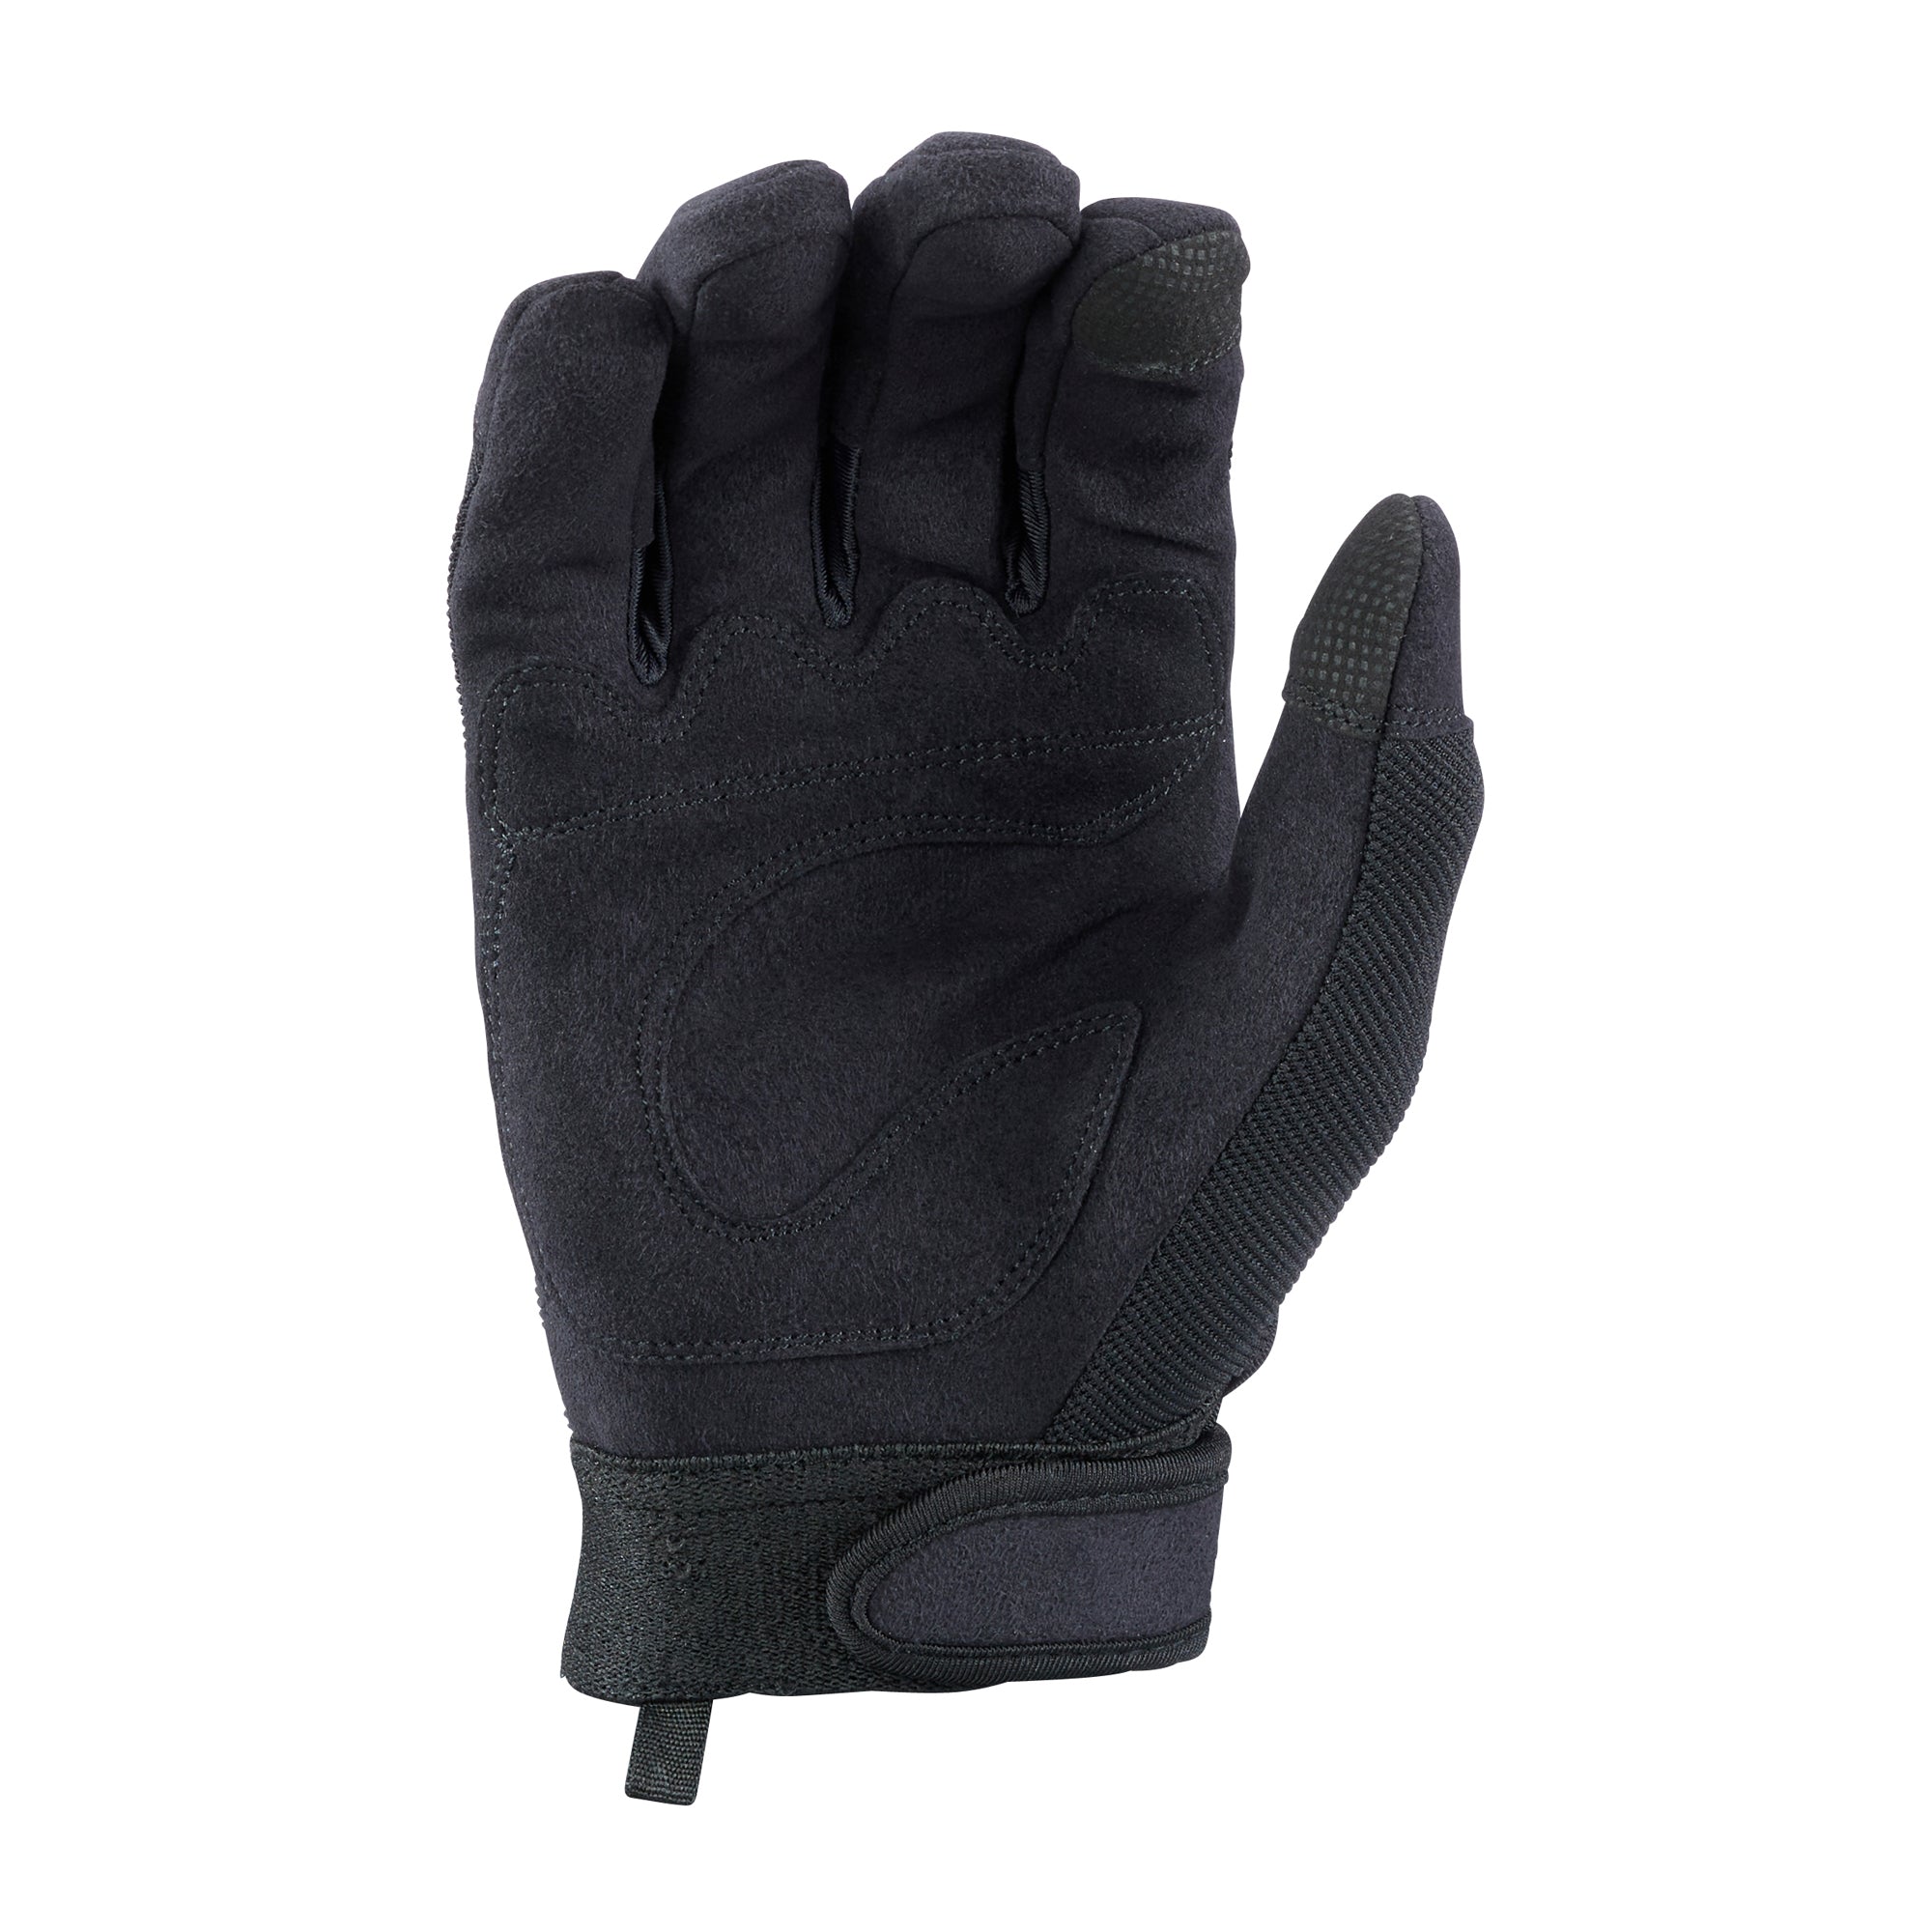 Wiley X Handschuhe APX SmartTouch schwarz